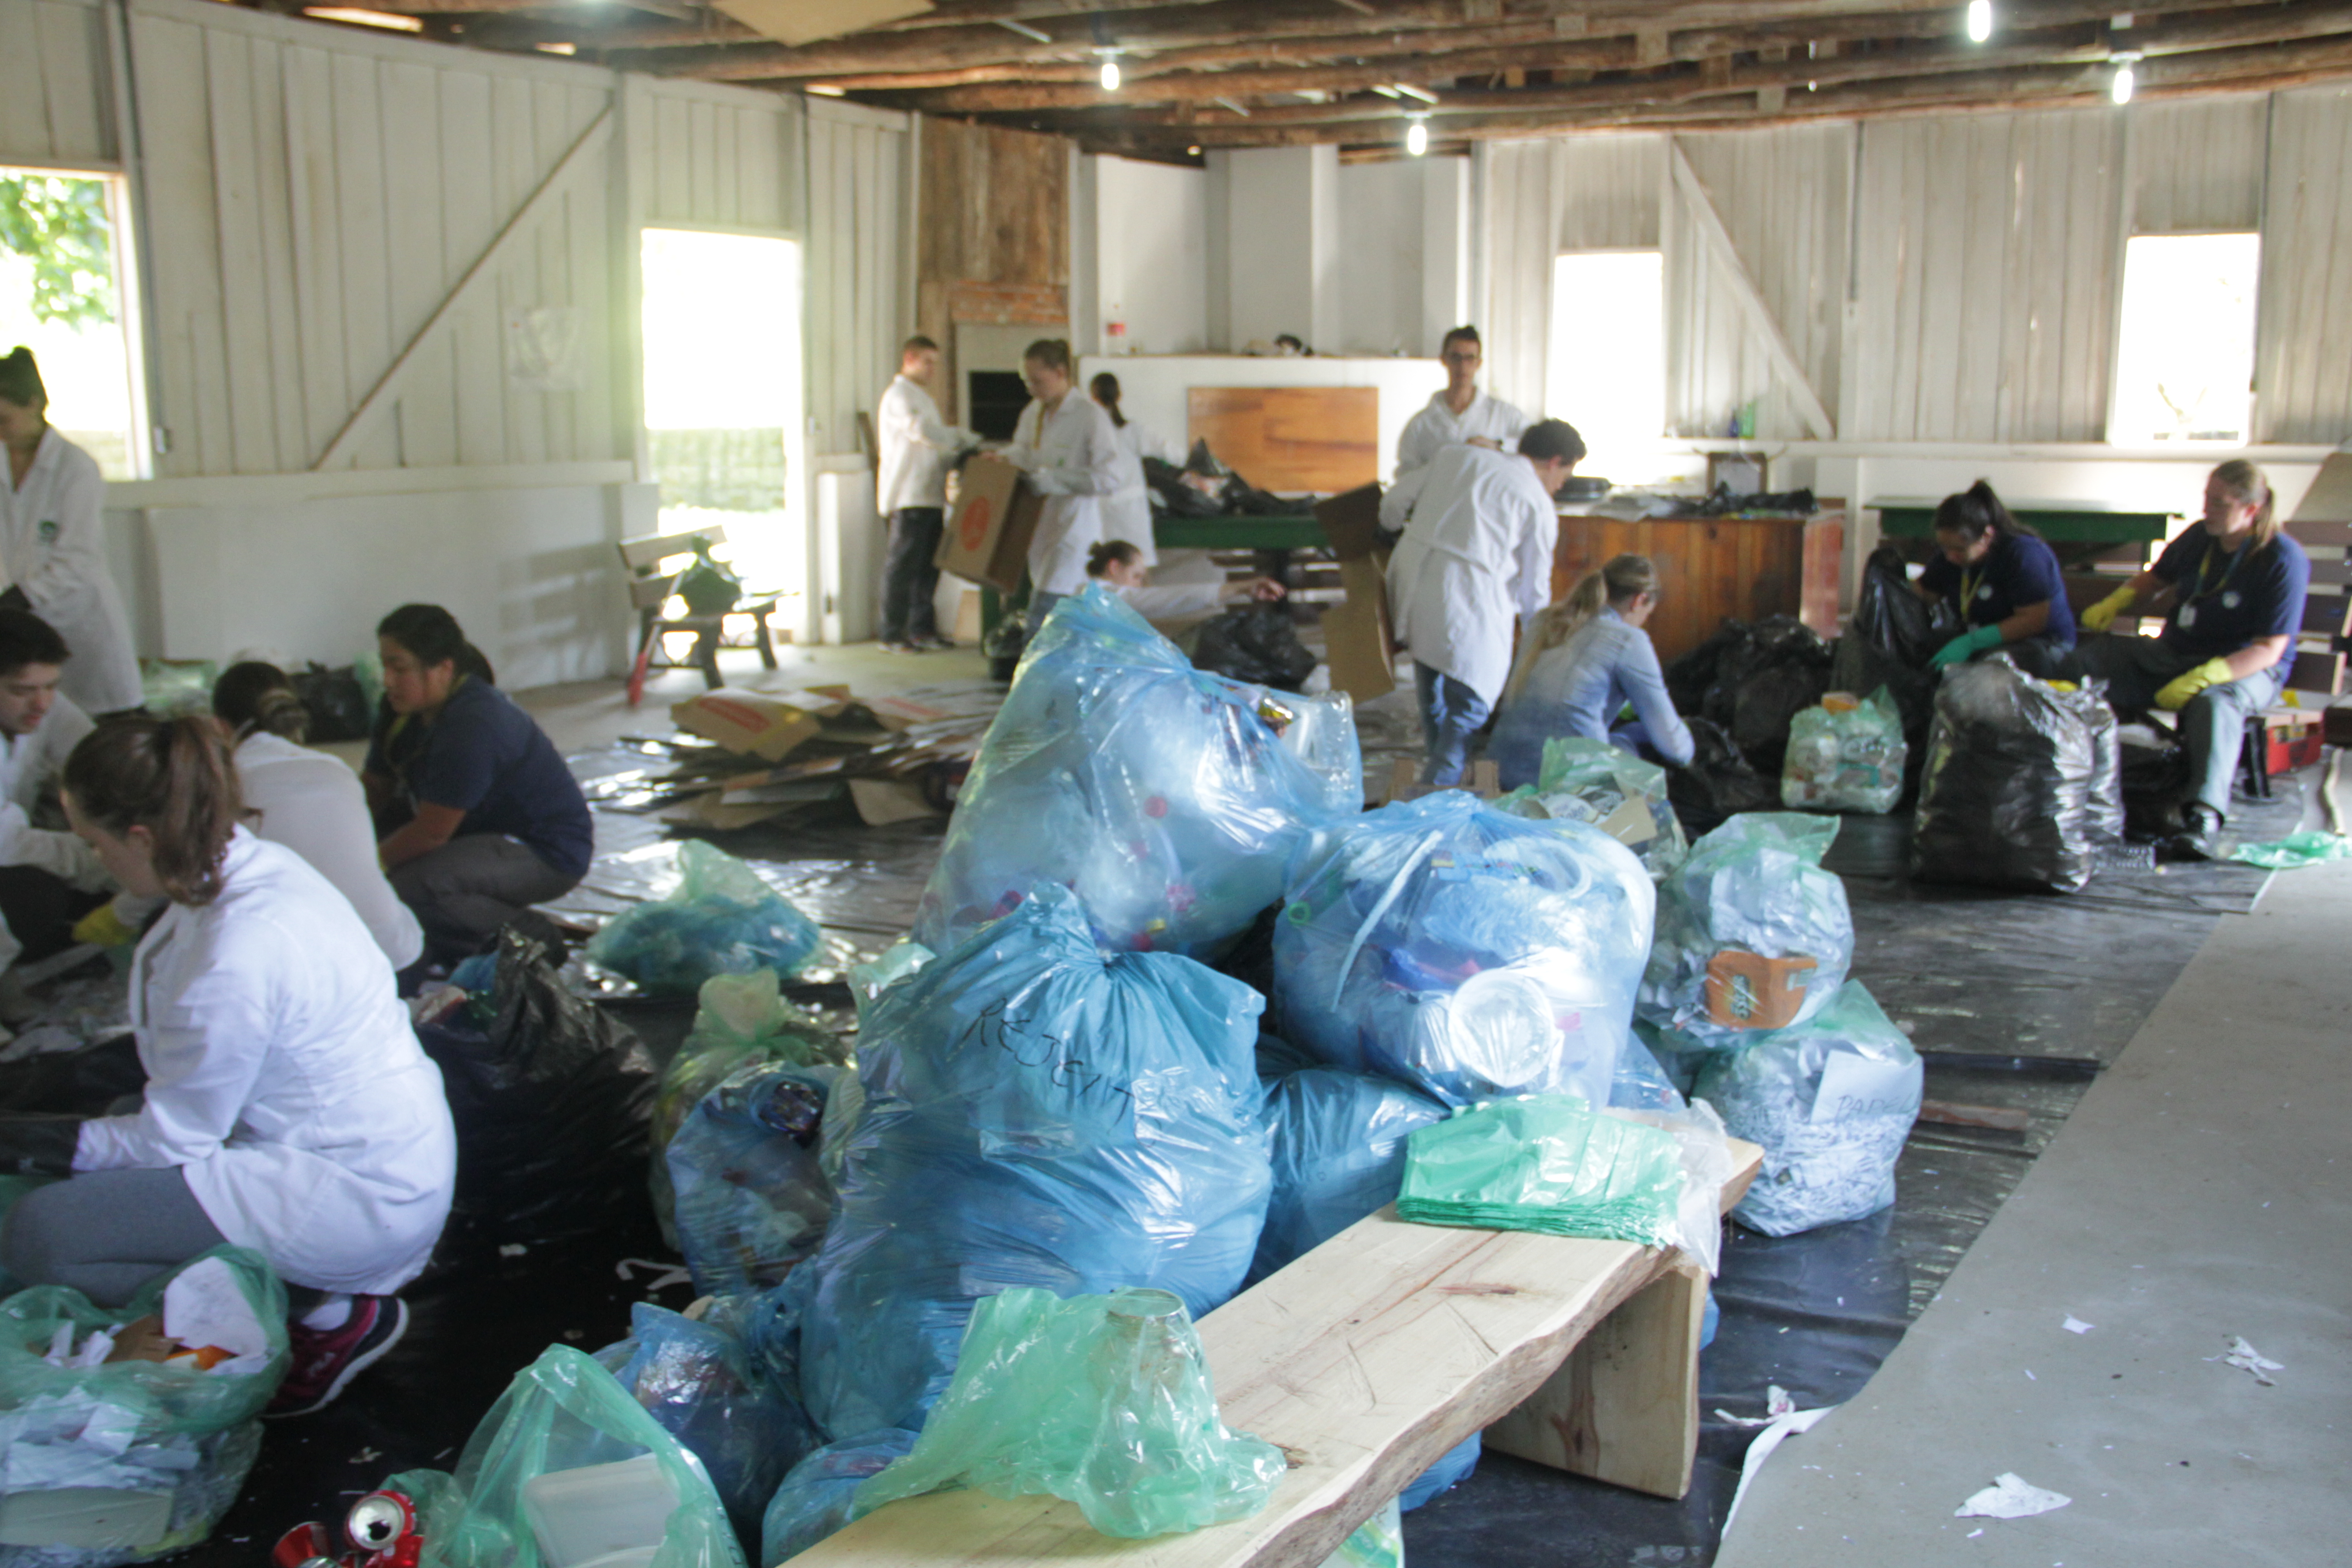 Foto em plano aberto, porém de outro ângulo, mostrando os sacos de lixo, caixas de papelão e a equipe trabalhando.